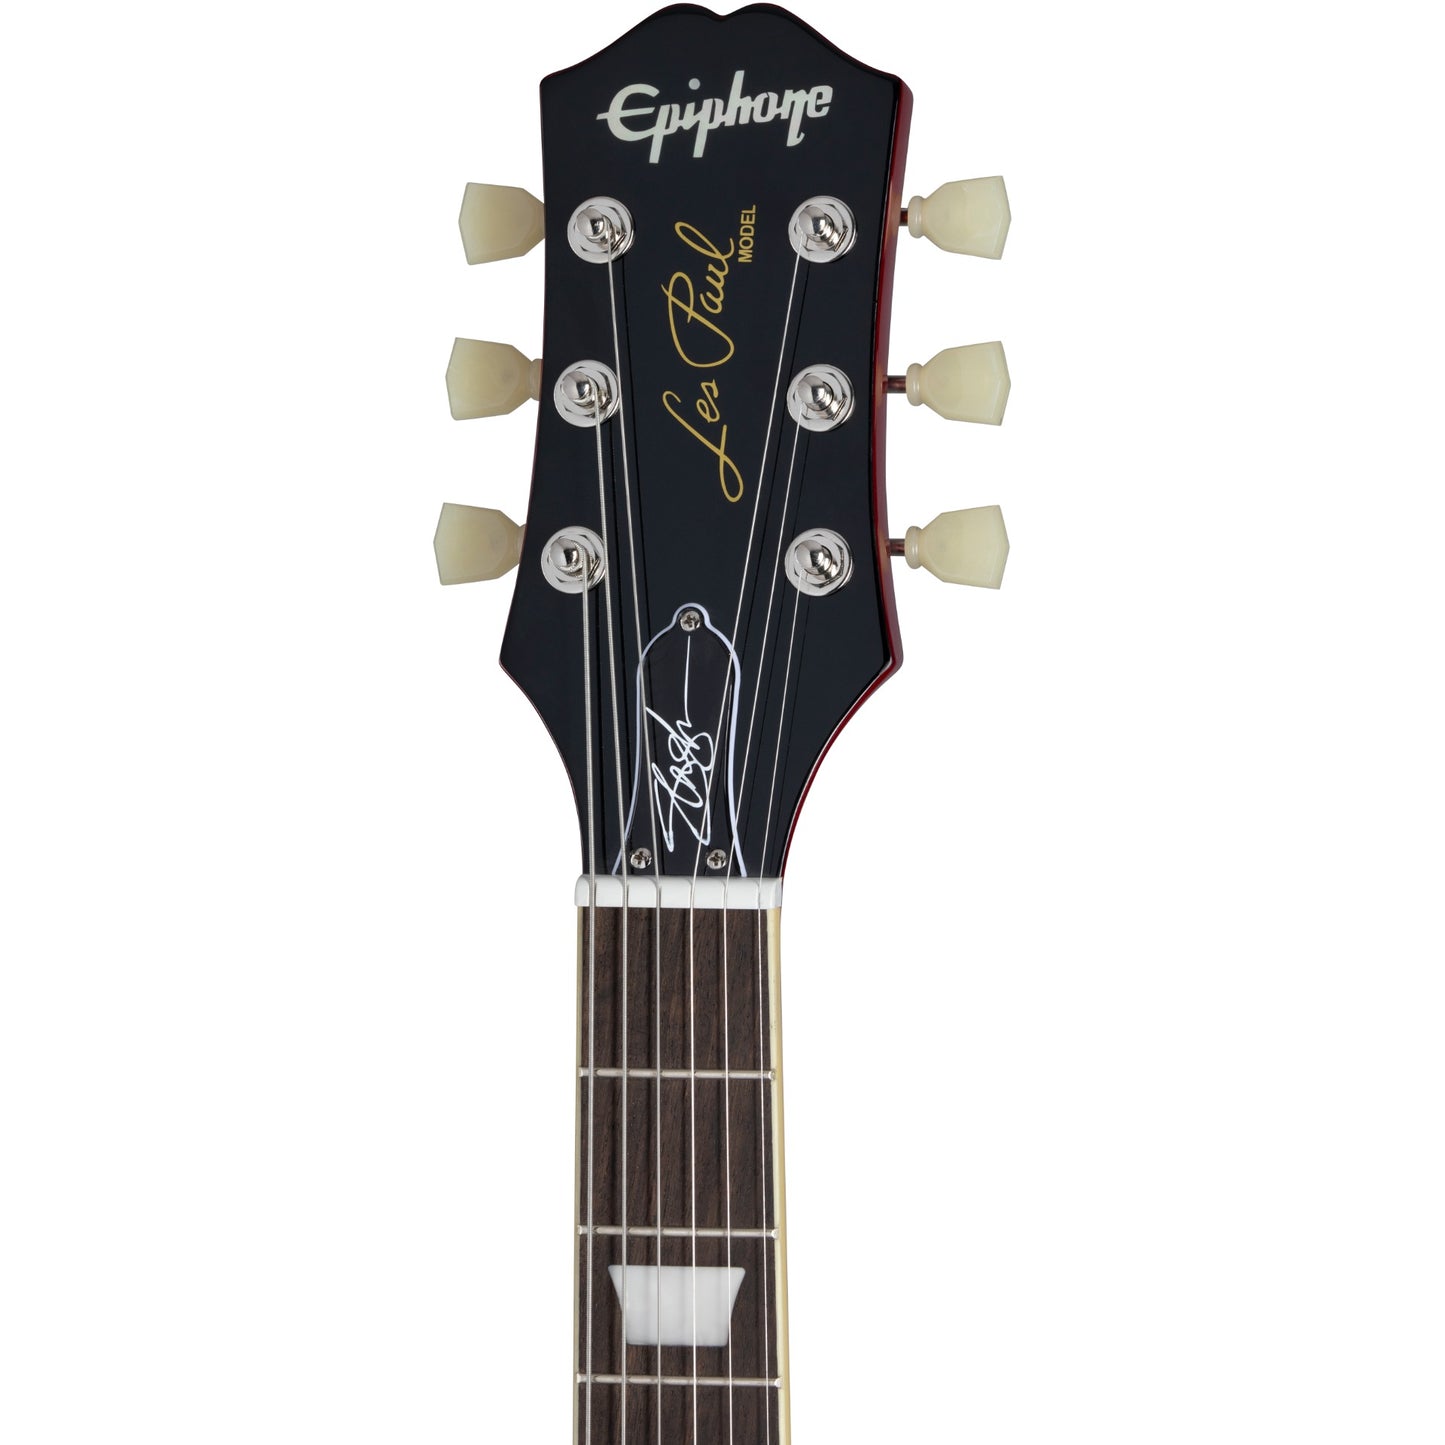 Epiphone Slash Les Paul Standard Electric Guitar in Vermillion Burst w/ Case